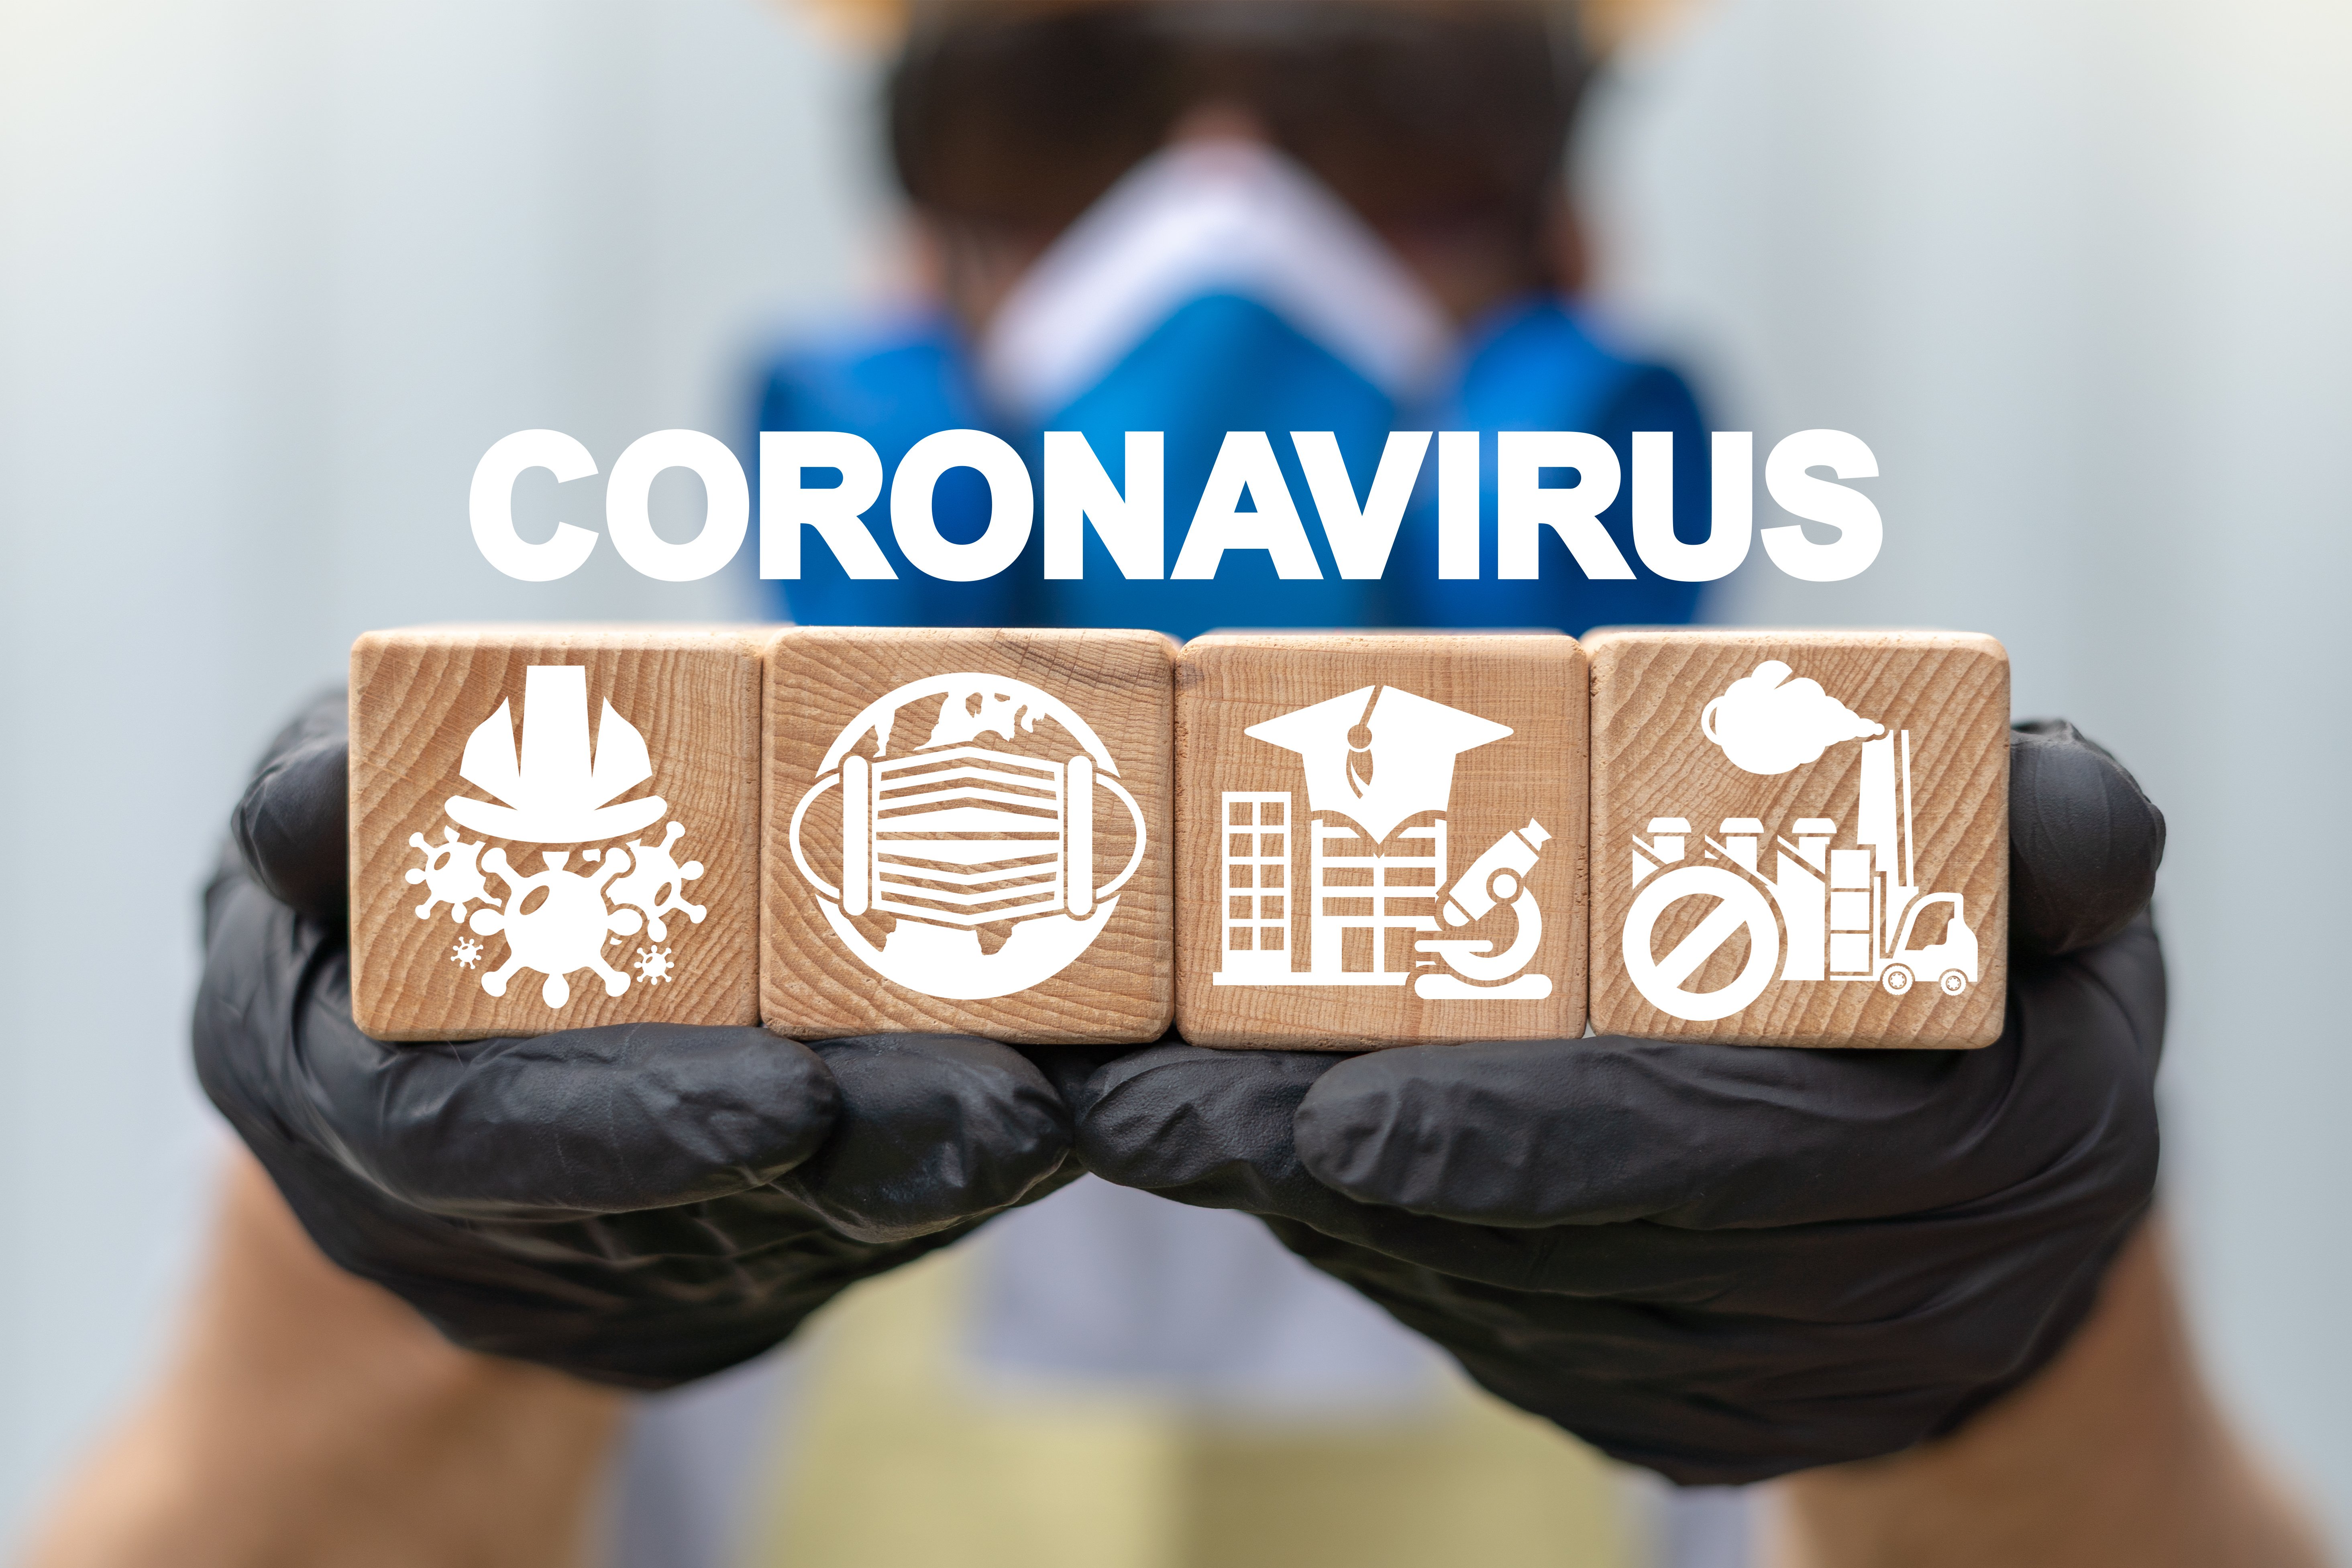 Δ1α/Γ.Π.οικ. 16393/2020: Μέτρα προστασίας της Δημόσιας Υγείας μέσω πρόληψης κατά της διασποράς του κορωνοϊού COVID-19 σε χώρους εργασίας